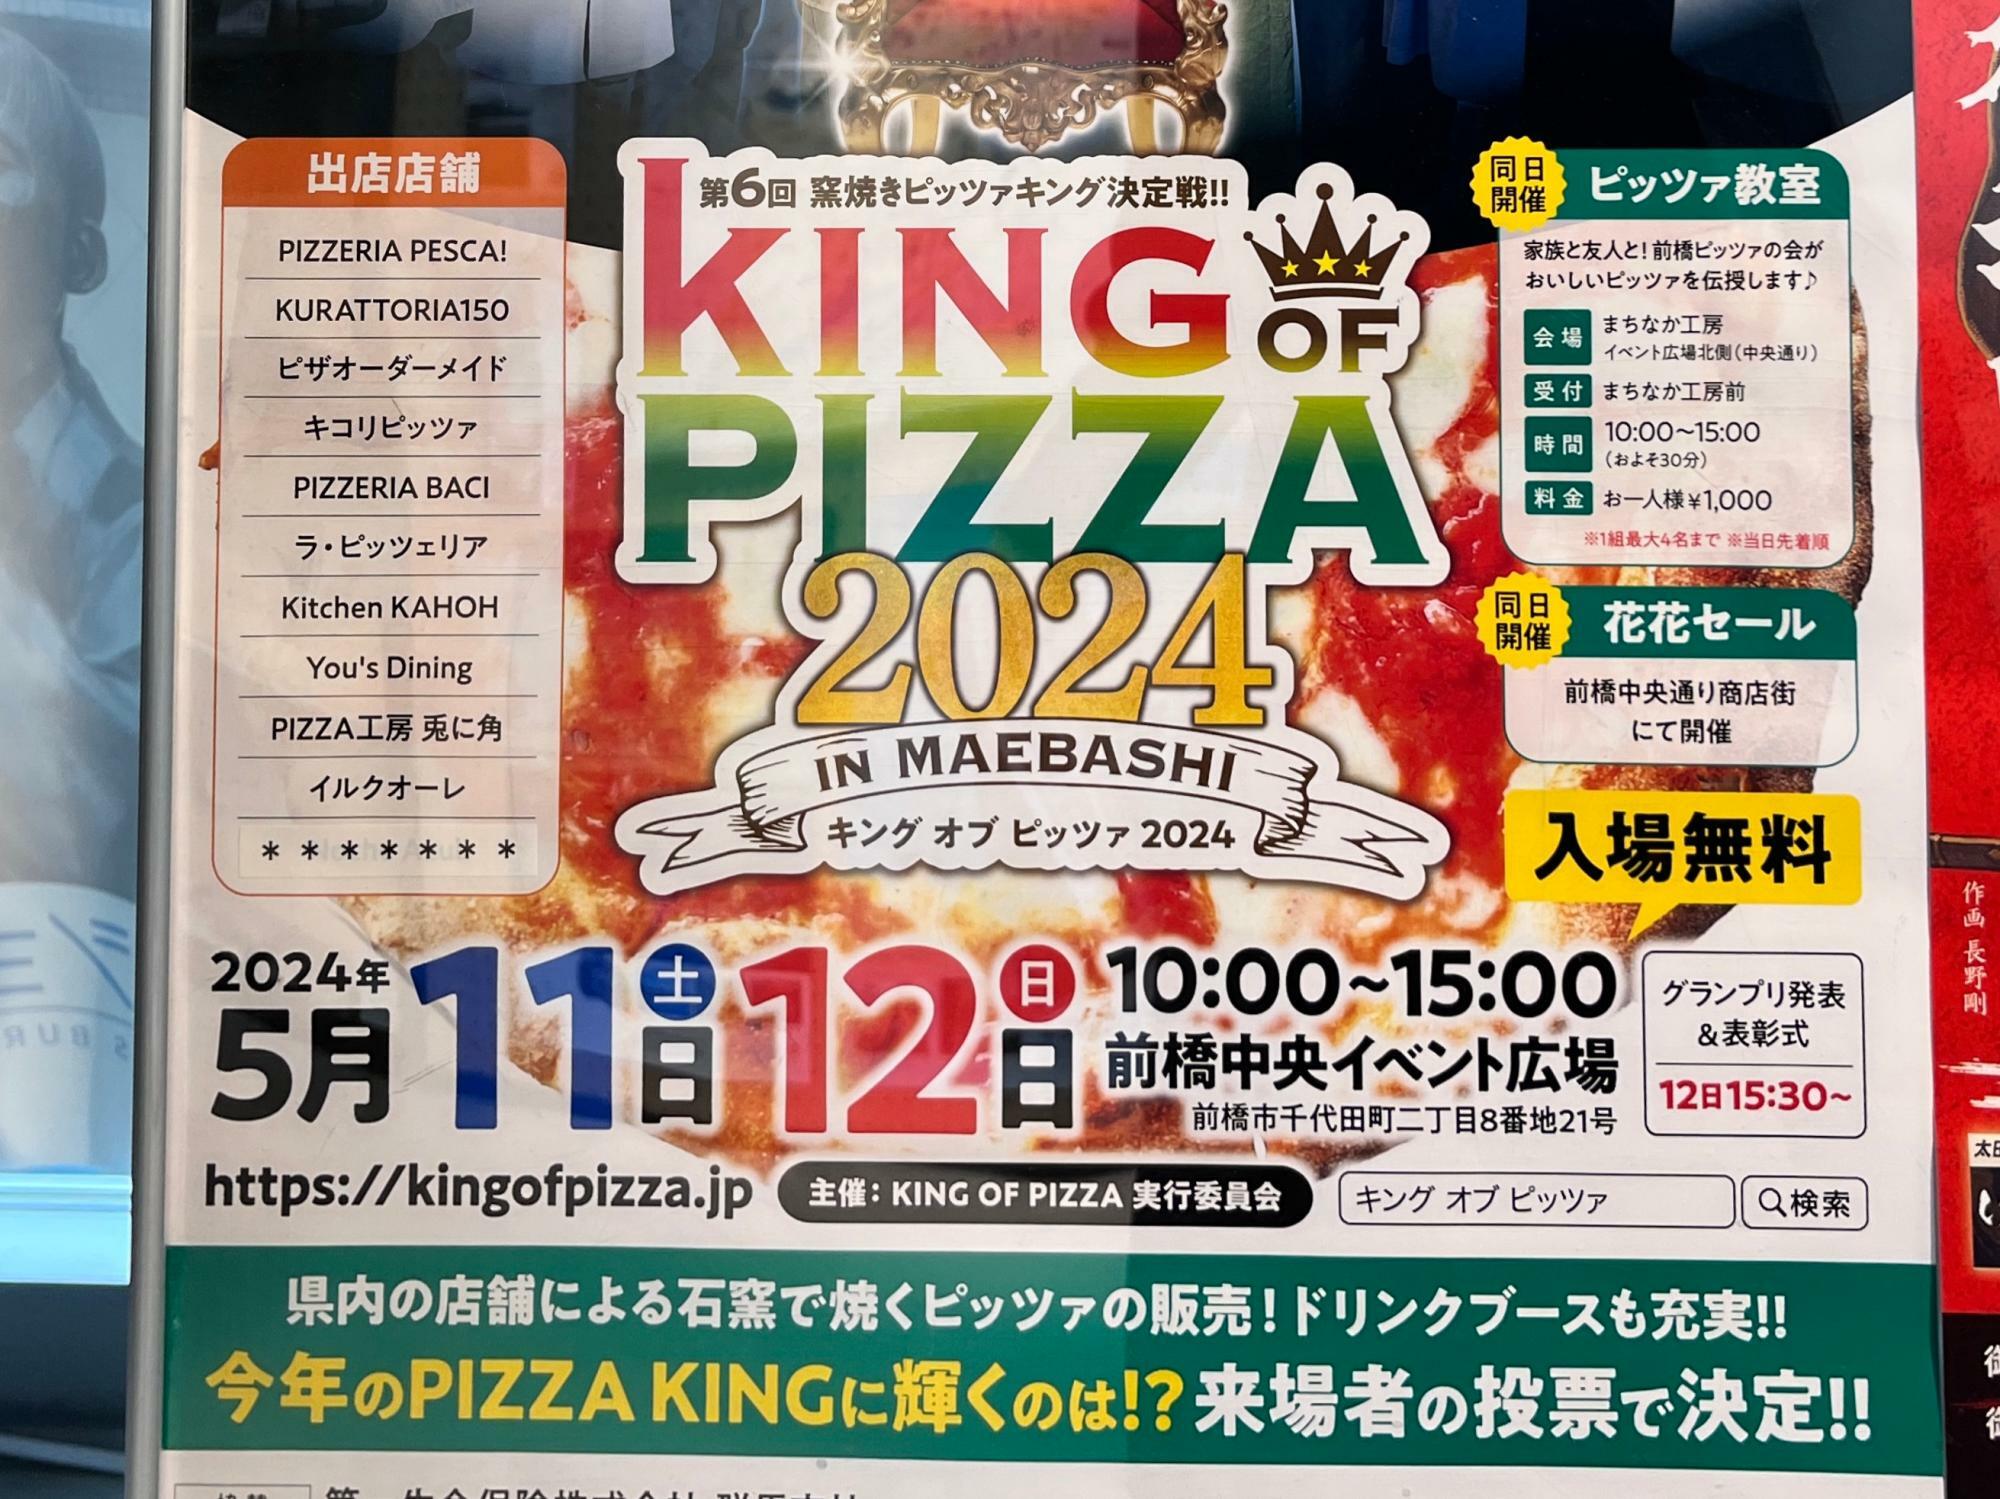 「キング オブ ピッツァ 2024」開催告知のポスター